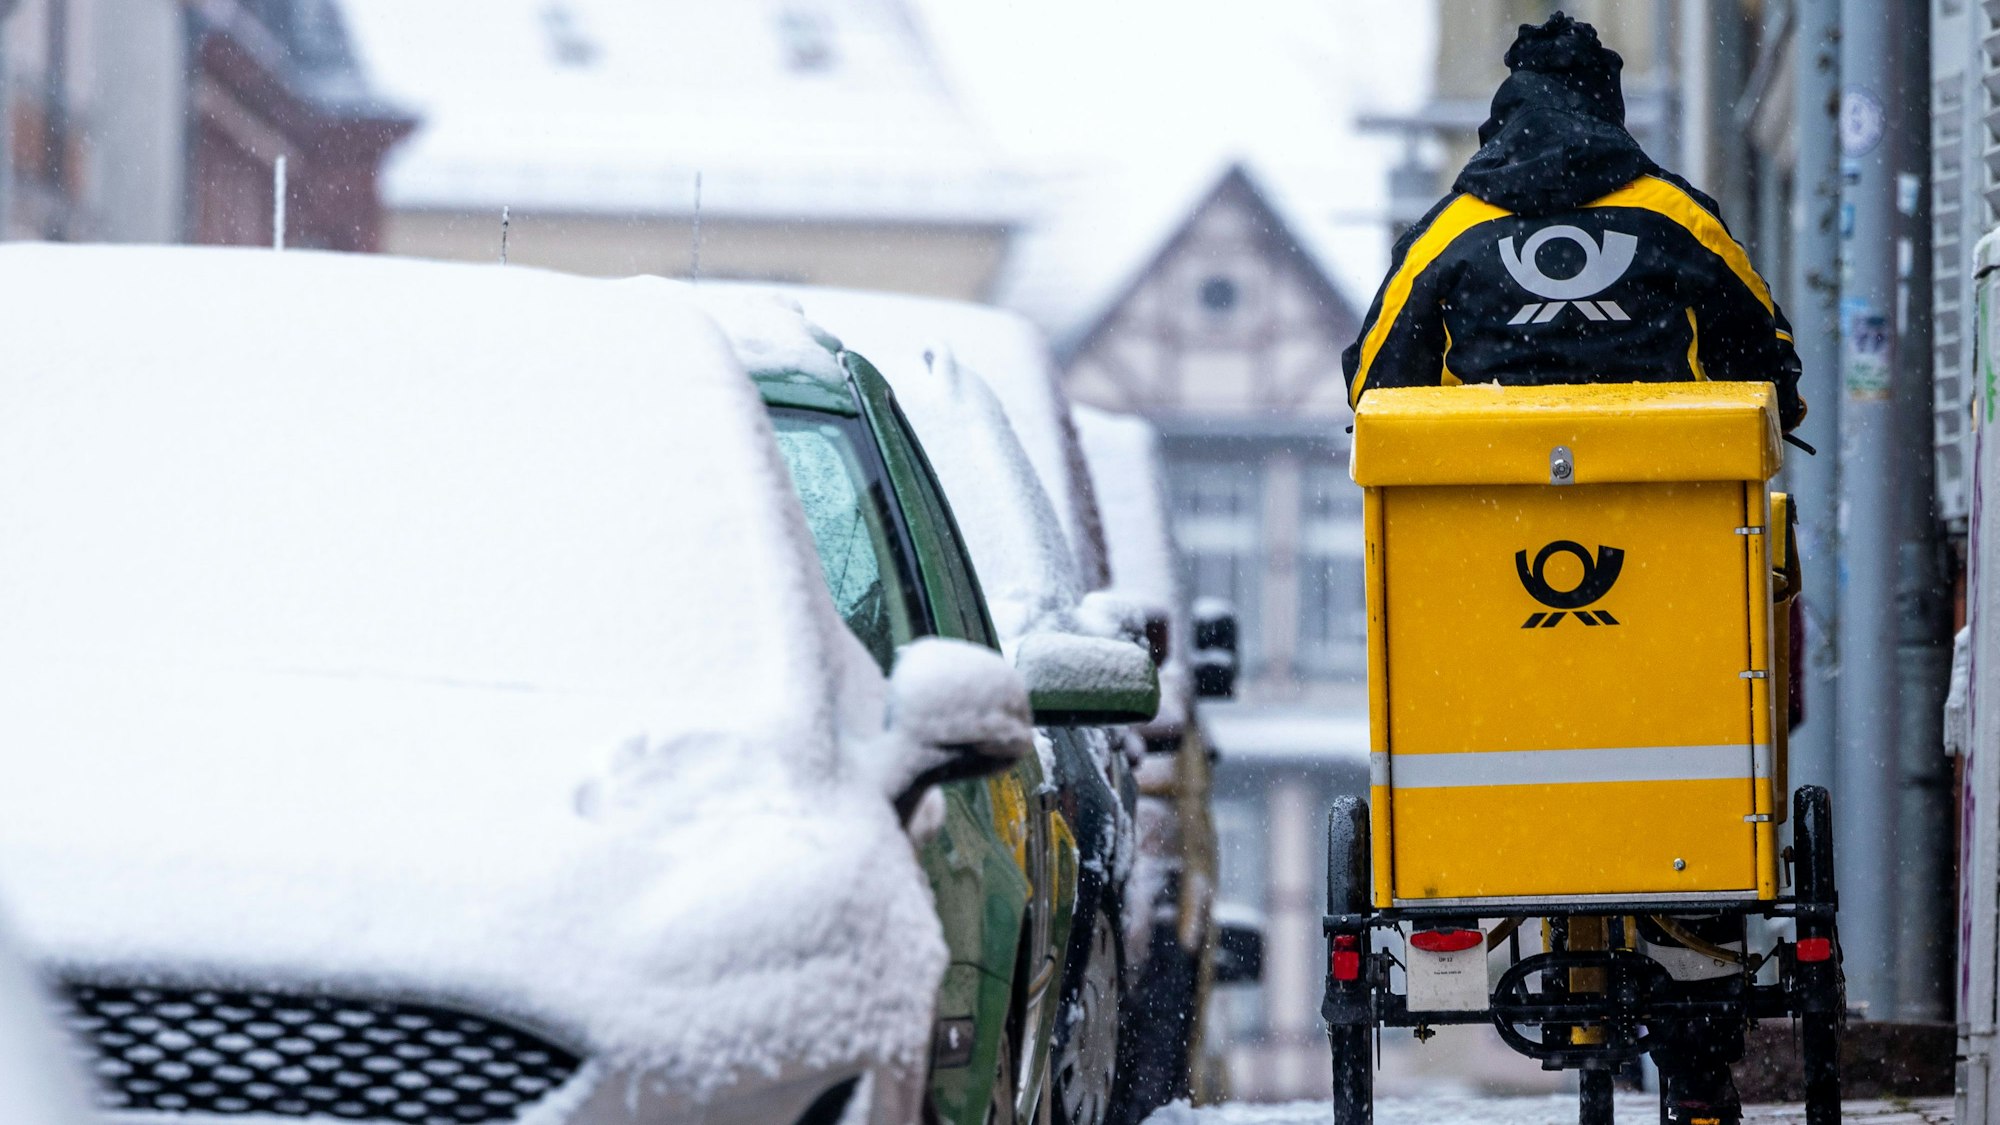 Eine Briefträgerin ist mit ihrem Fahrrad bei starkem Schneefall unterwegs.